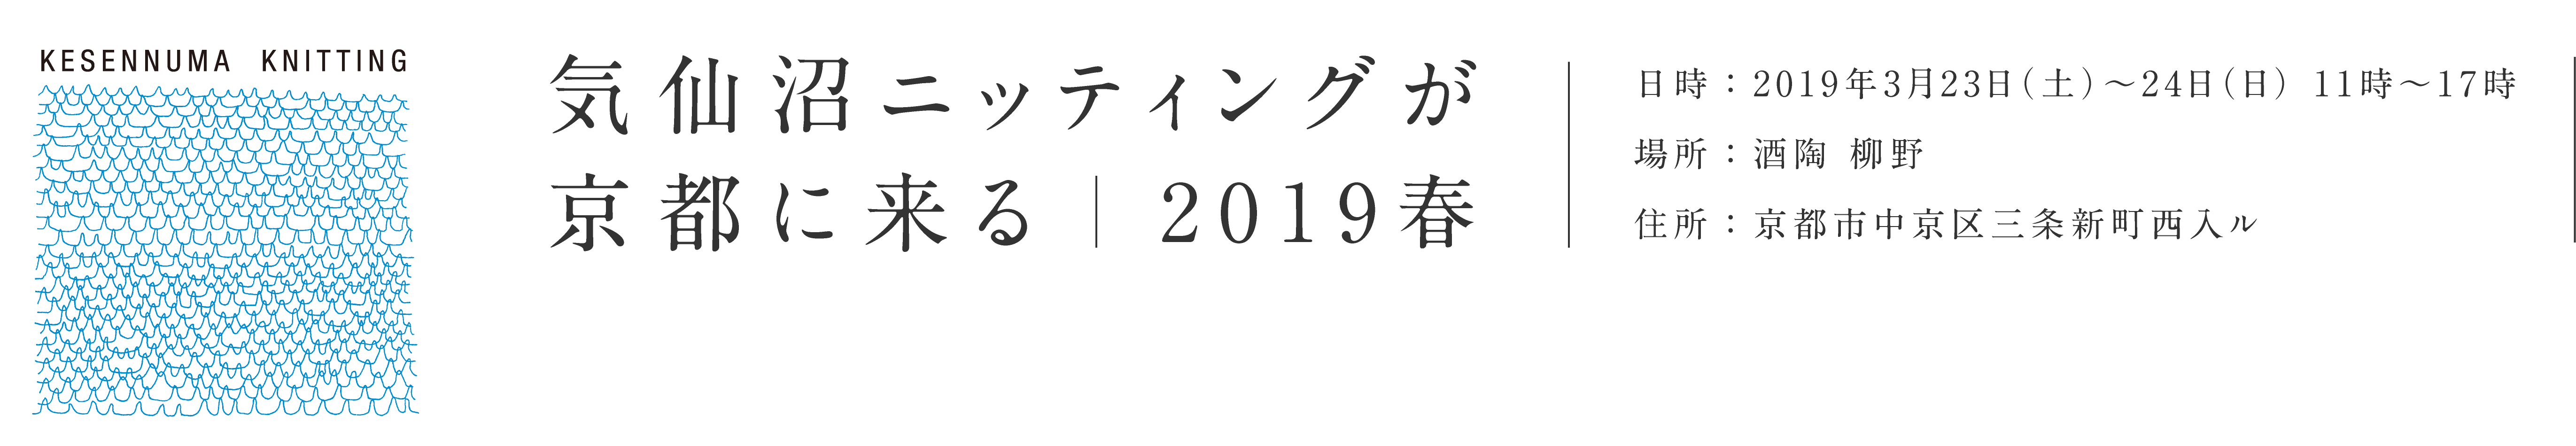 気仙沼ニッティングが京都に来る 2019春